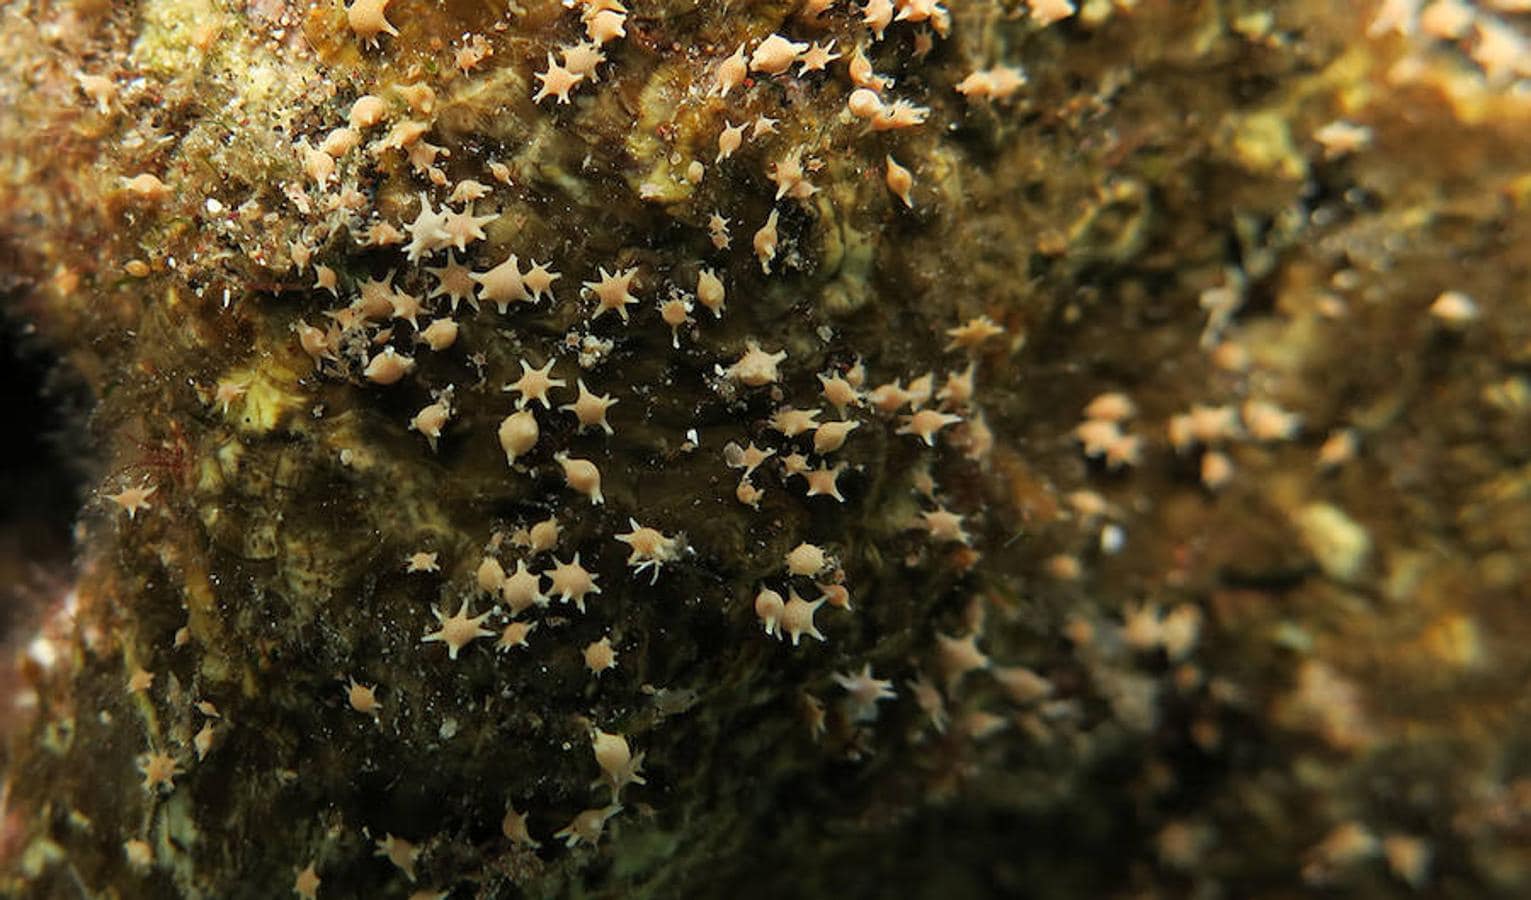 Un viaje por los corales del Pacífico en diez increíbles fotos. Si uno se fija bien en la arena, puede encontrar «polvo de estrellas» o los restos esqueléticos en forma de estrella de los foraminíferos, organismos unicelulares microscópicos que forman una parte importante de la cadena alimentaria marina.